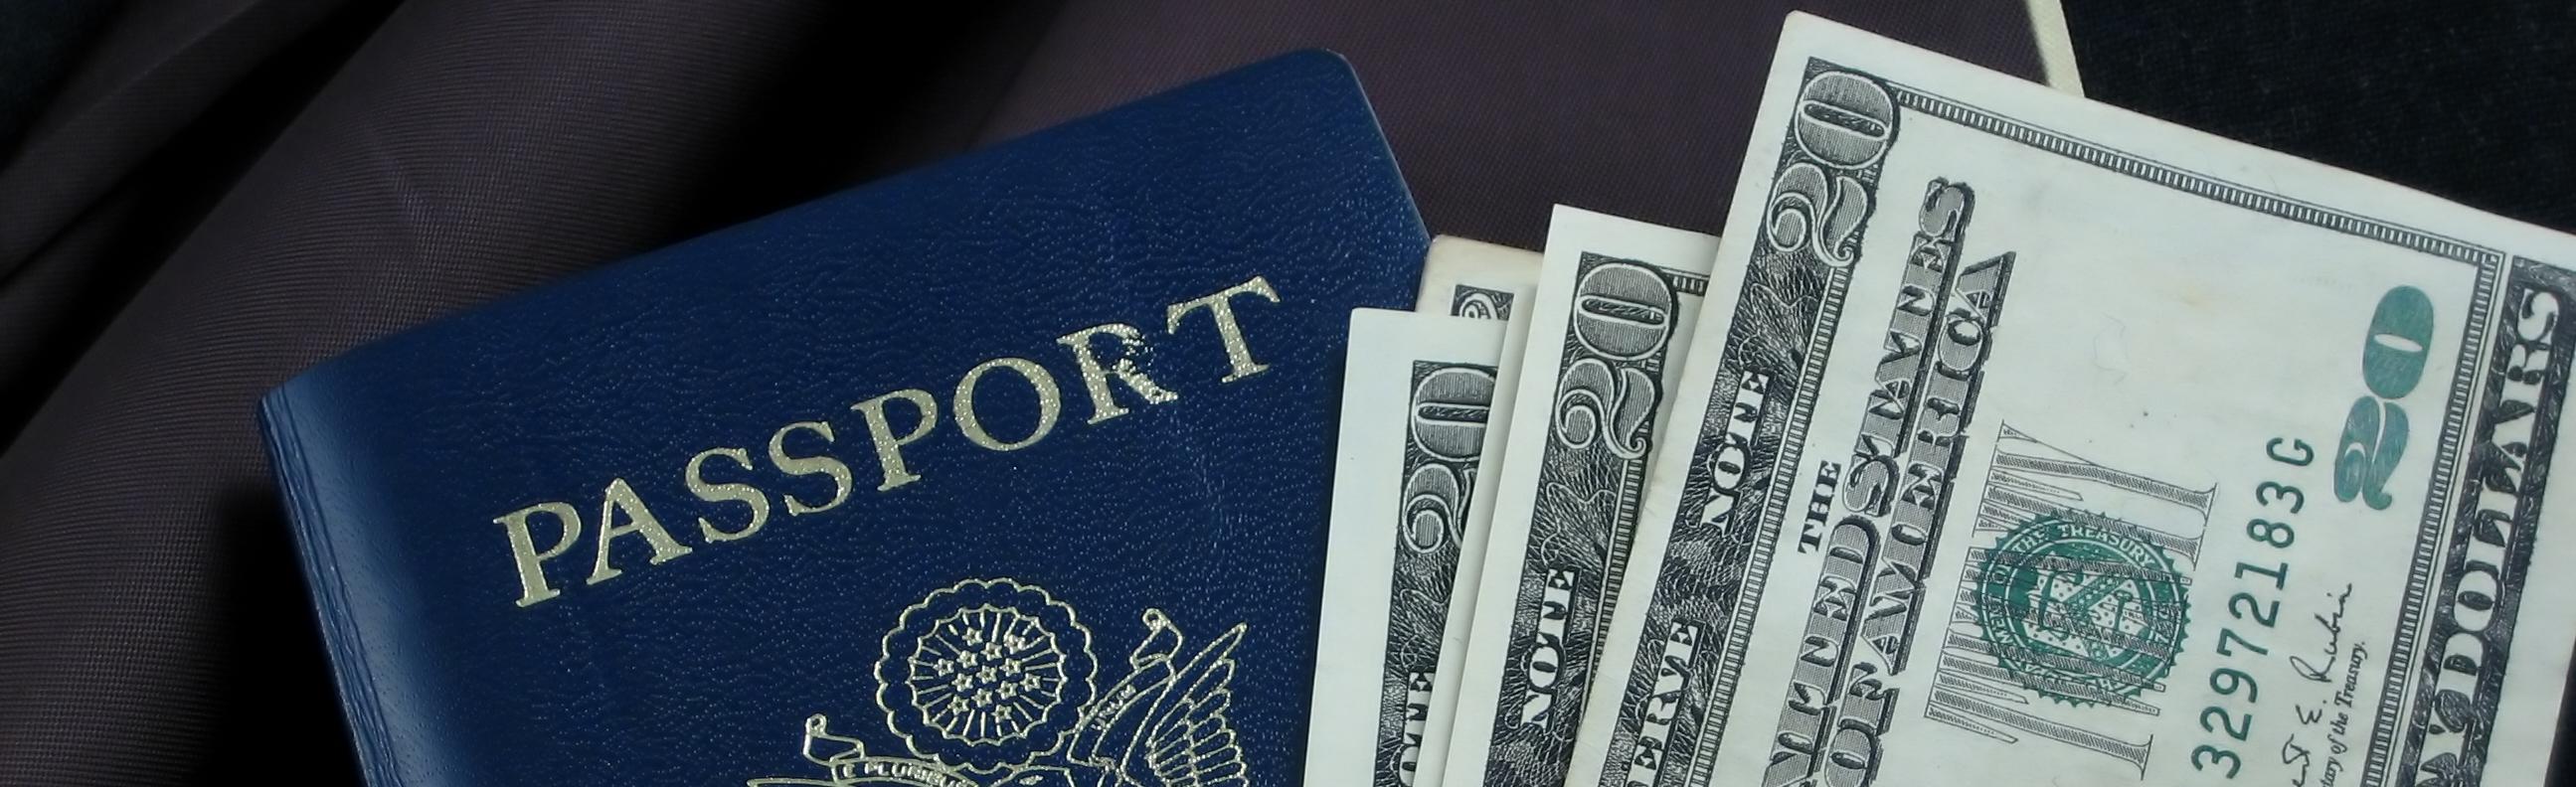 Passport and Cash